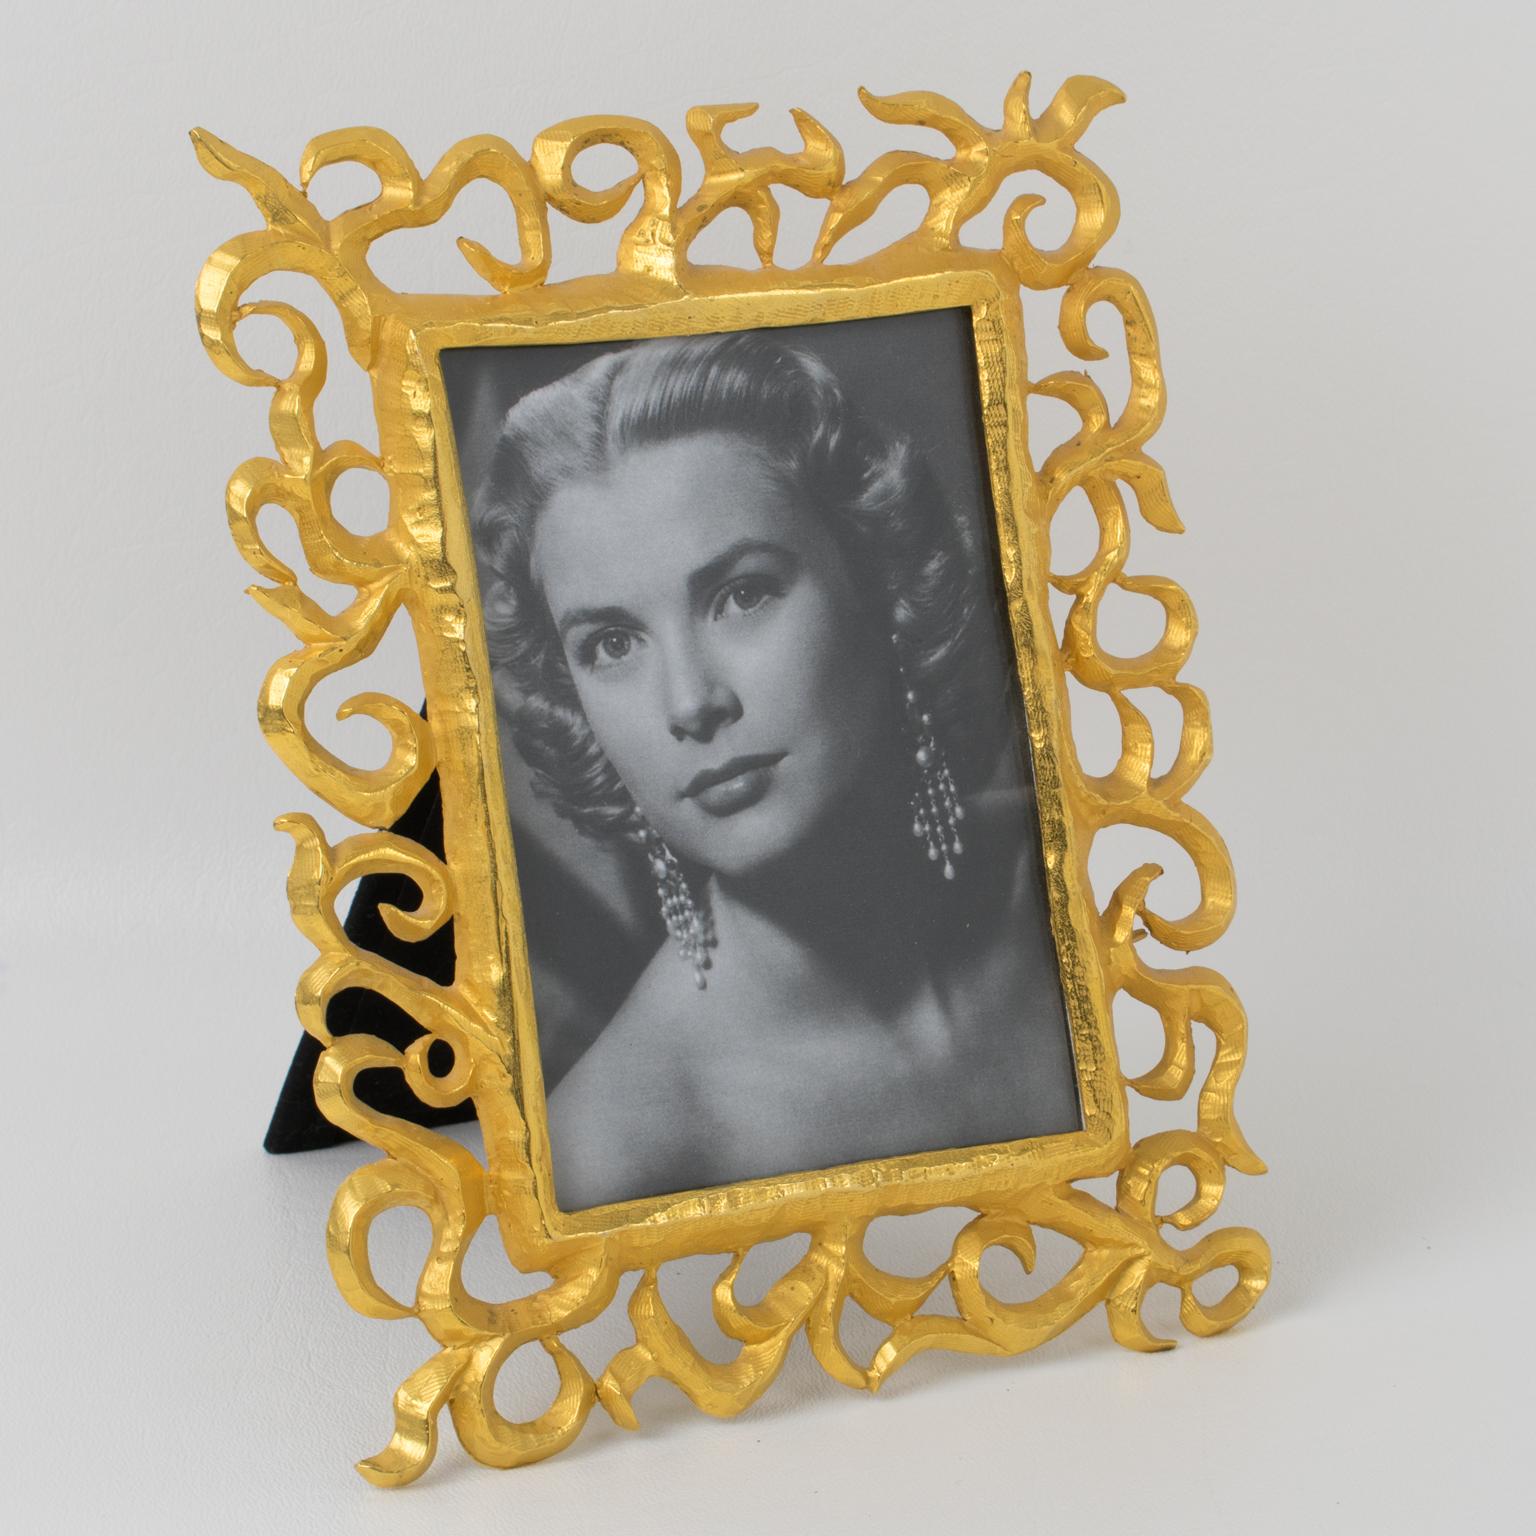 Ce cadre photo en métal doré du designer français Edouard Rambaud est l'accessoire idéal pour mettre en valeur vos souvenirs les plus précieux. Fabriqué dans les années 1990, cet élégant cadre est fabriqué en métal doré brossé avec des détails